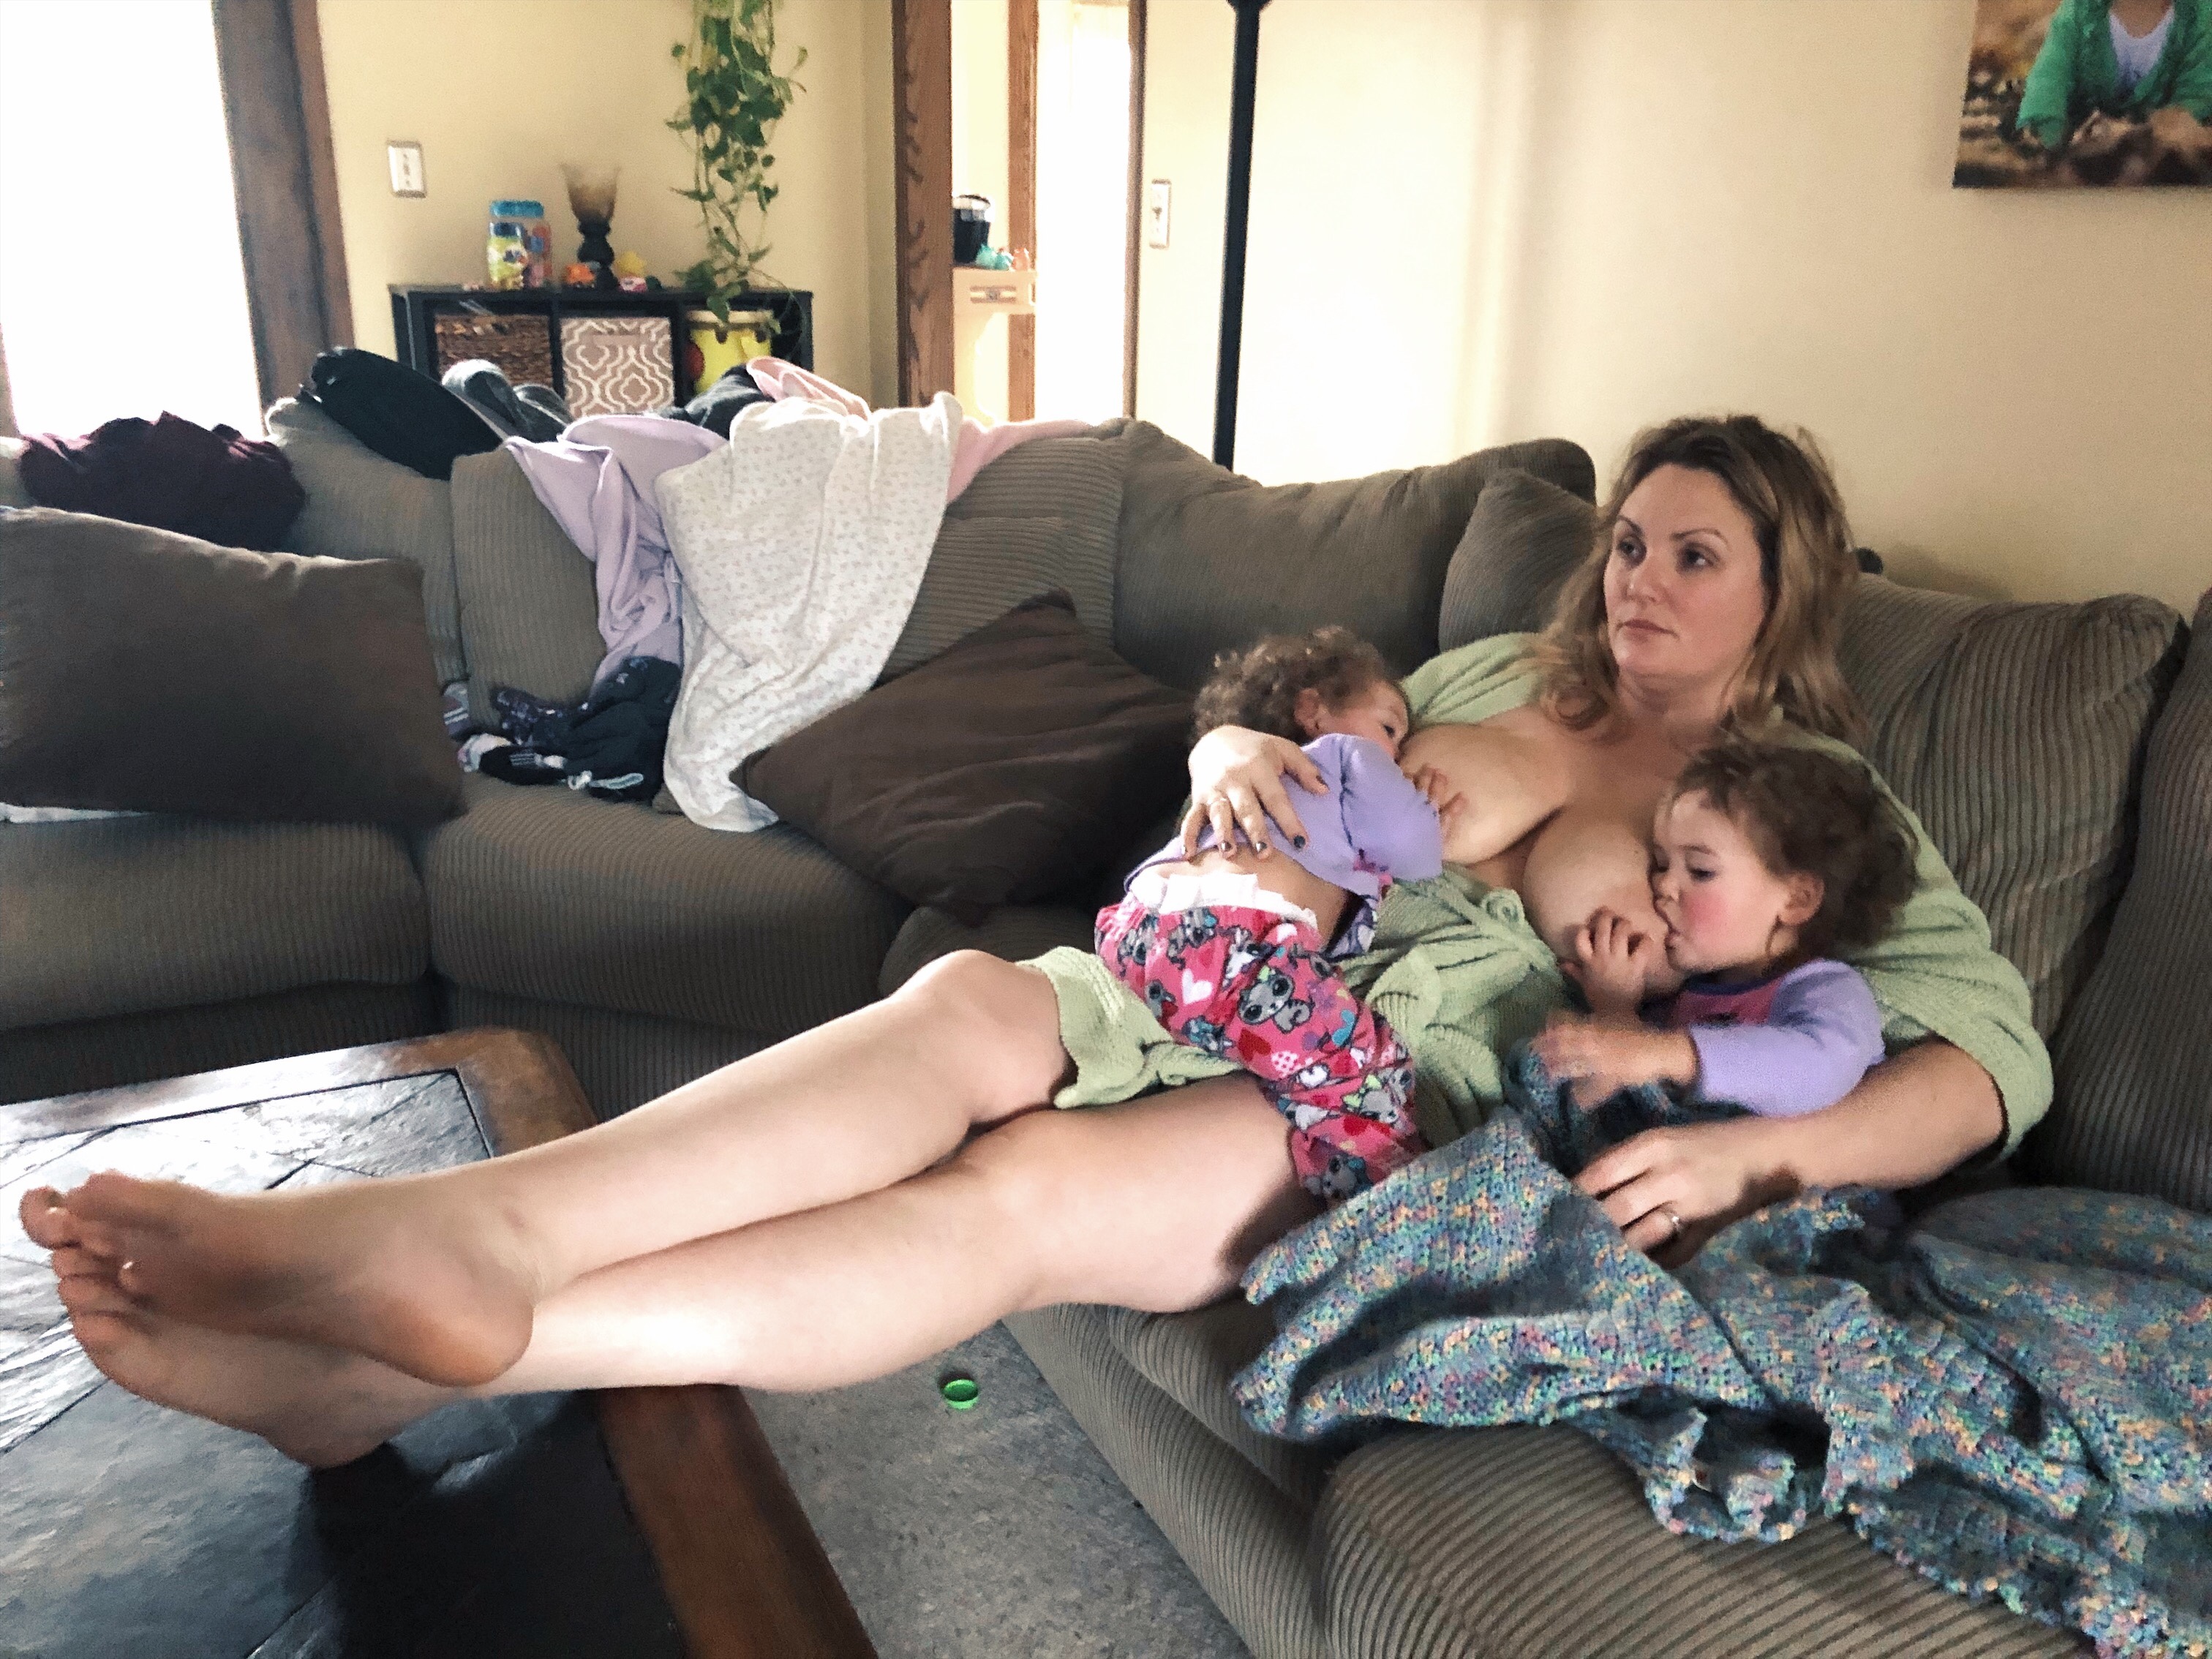 extended breastfeeding blog